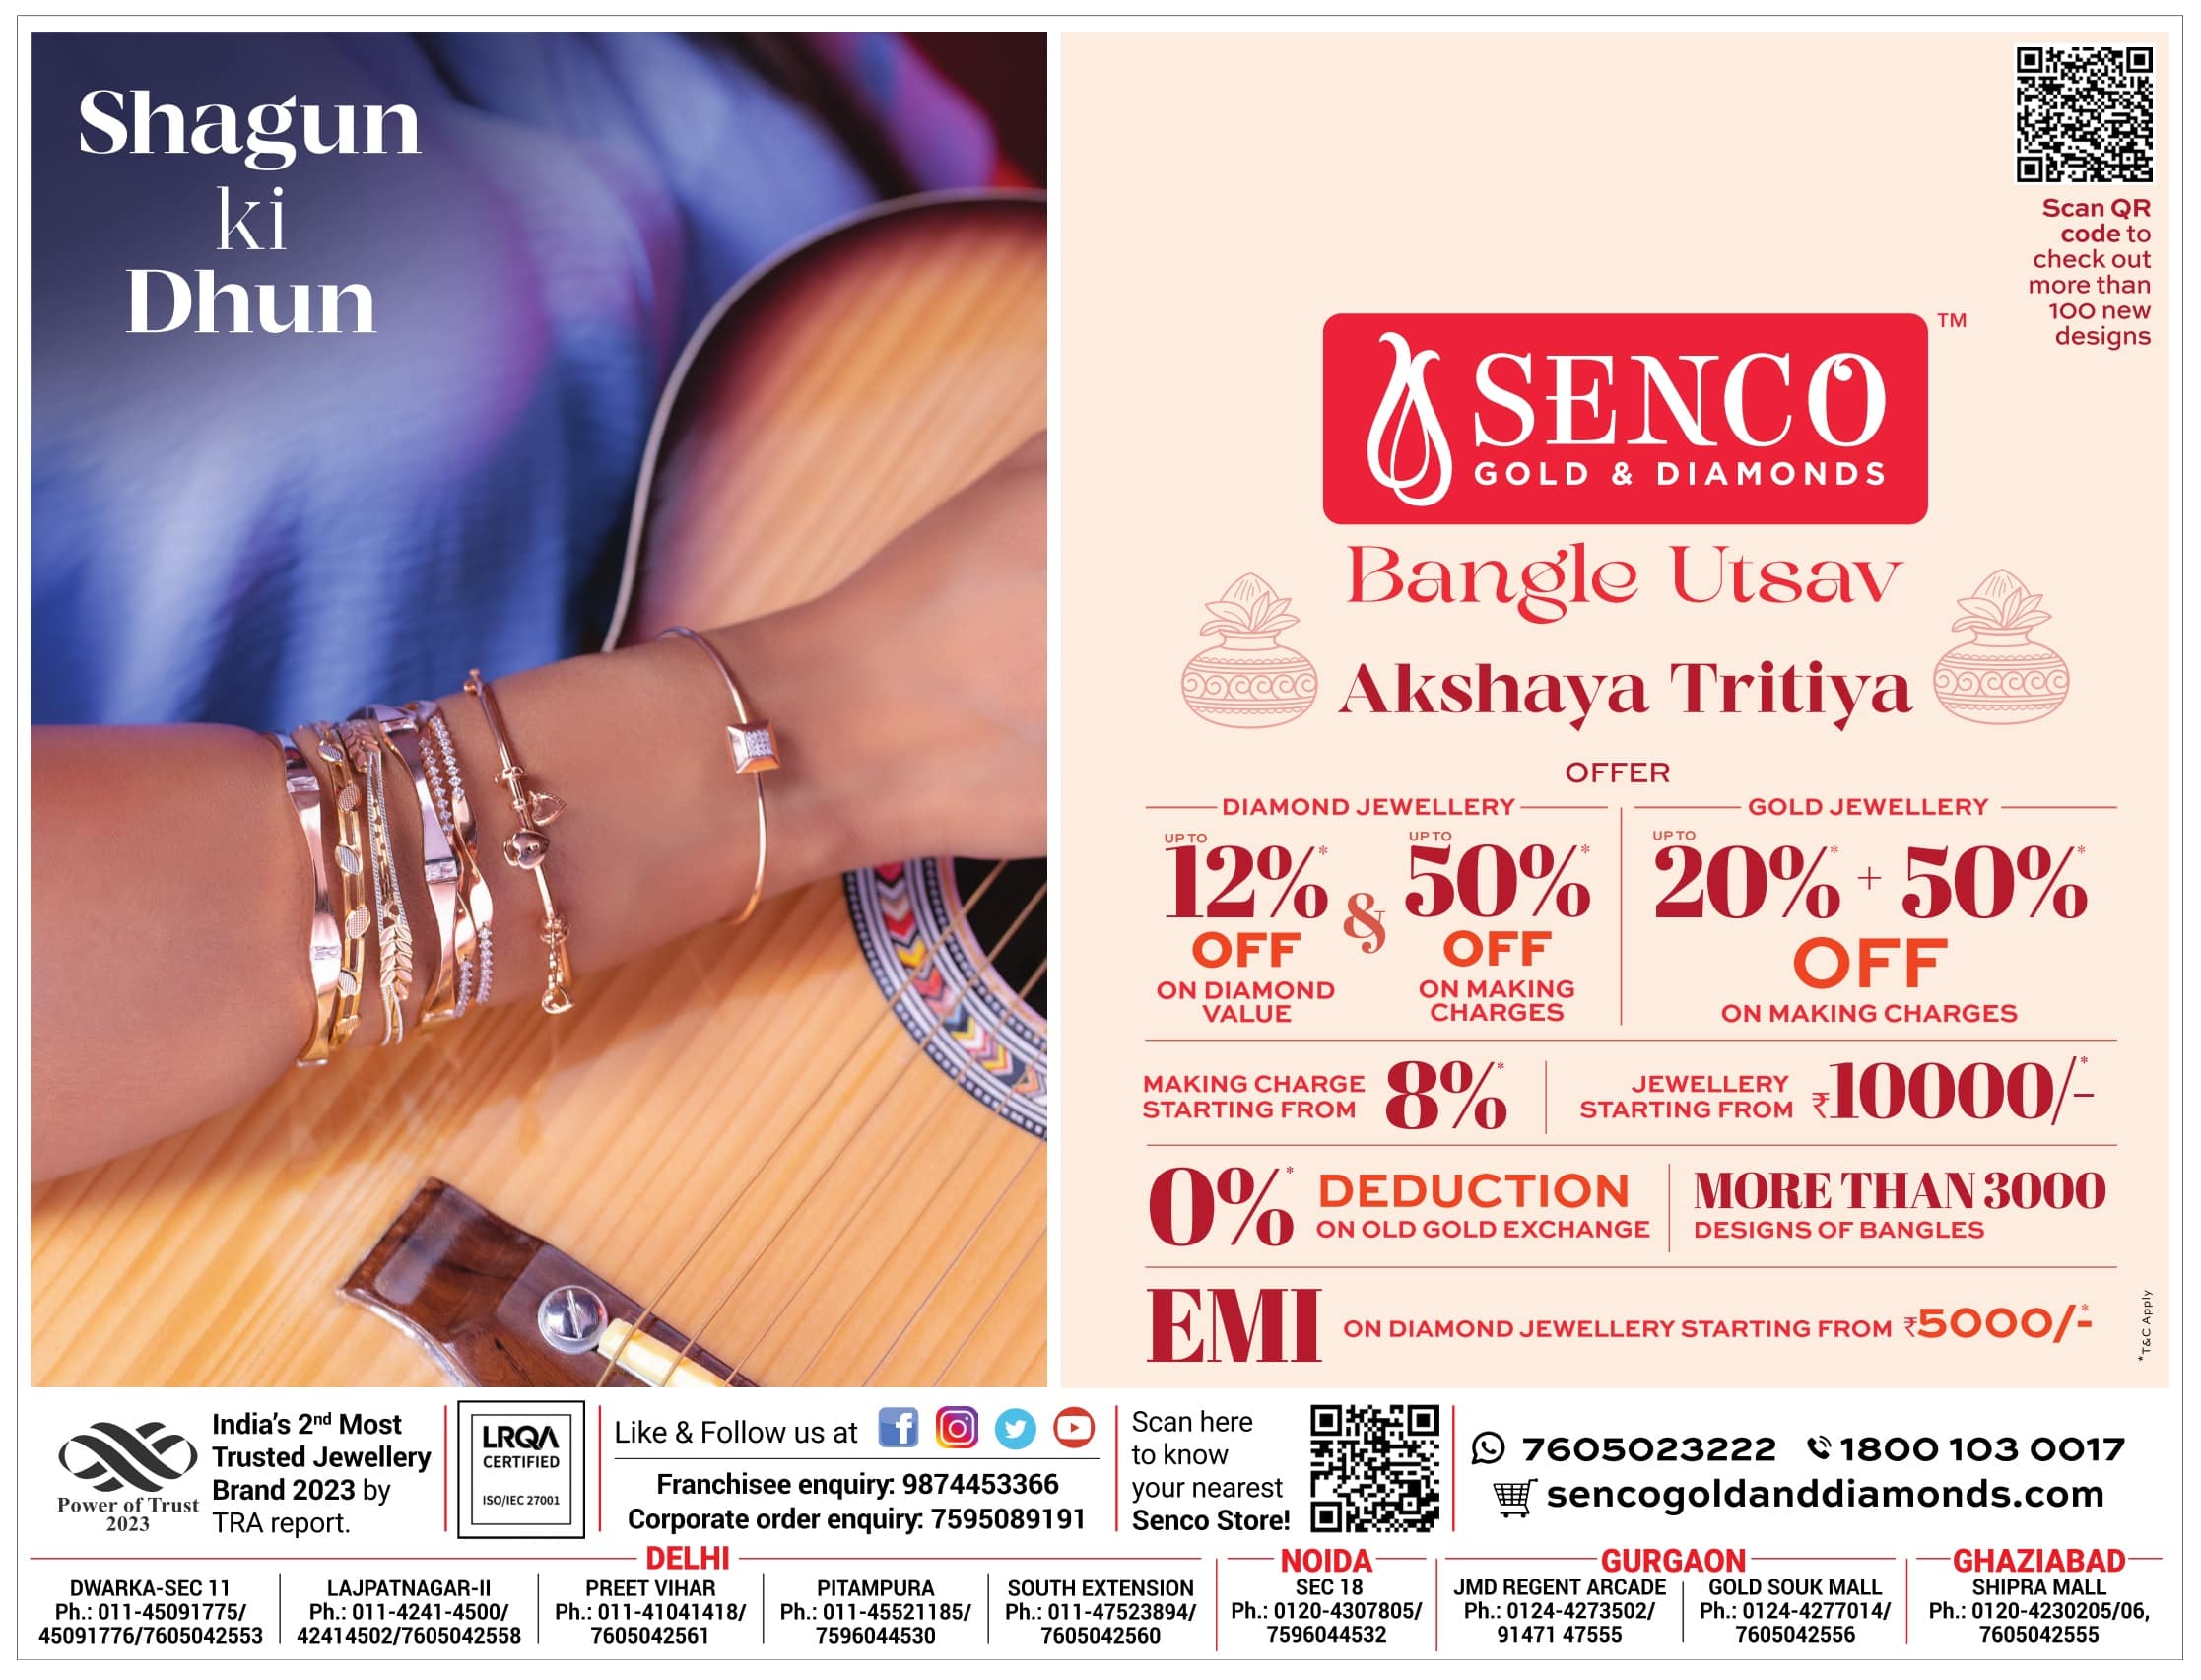 Senco Gold & Diamonds Akshaya Tritiya offers